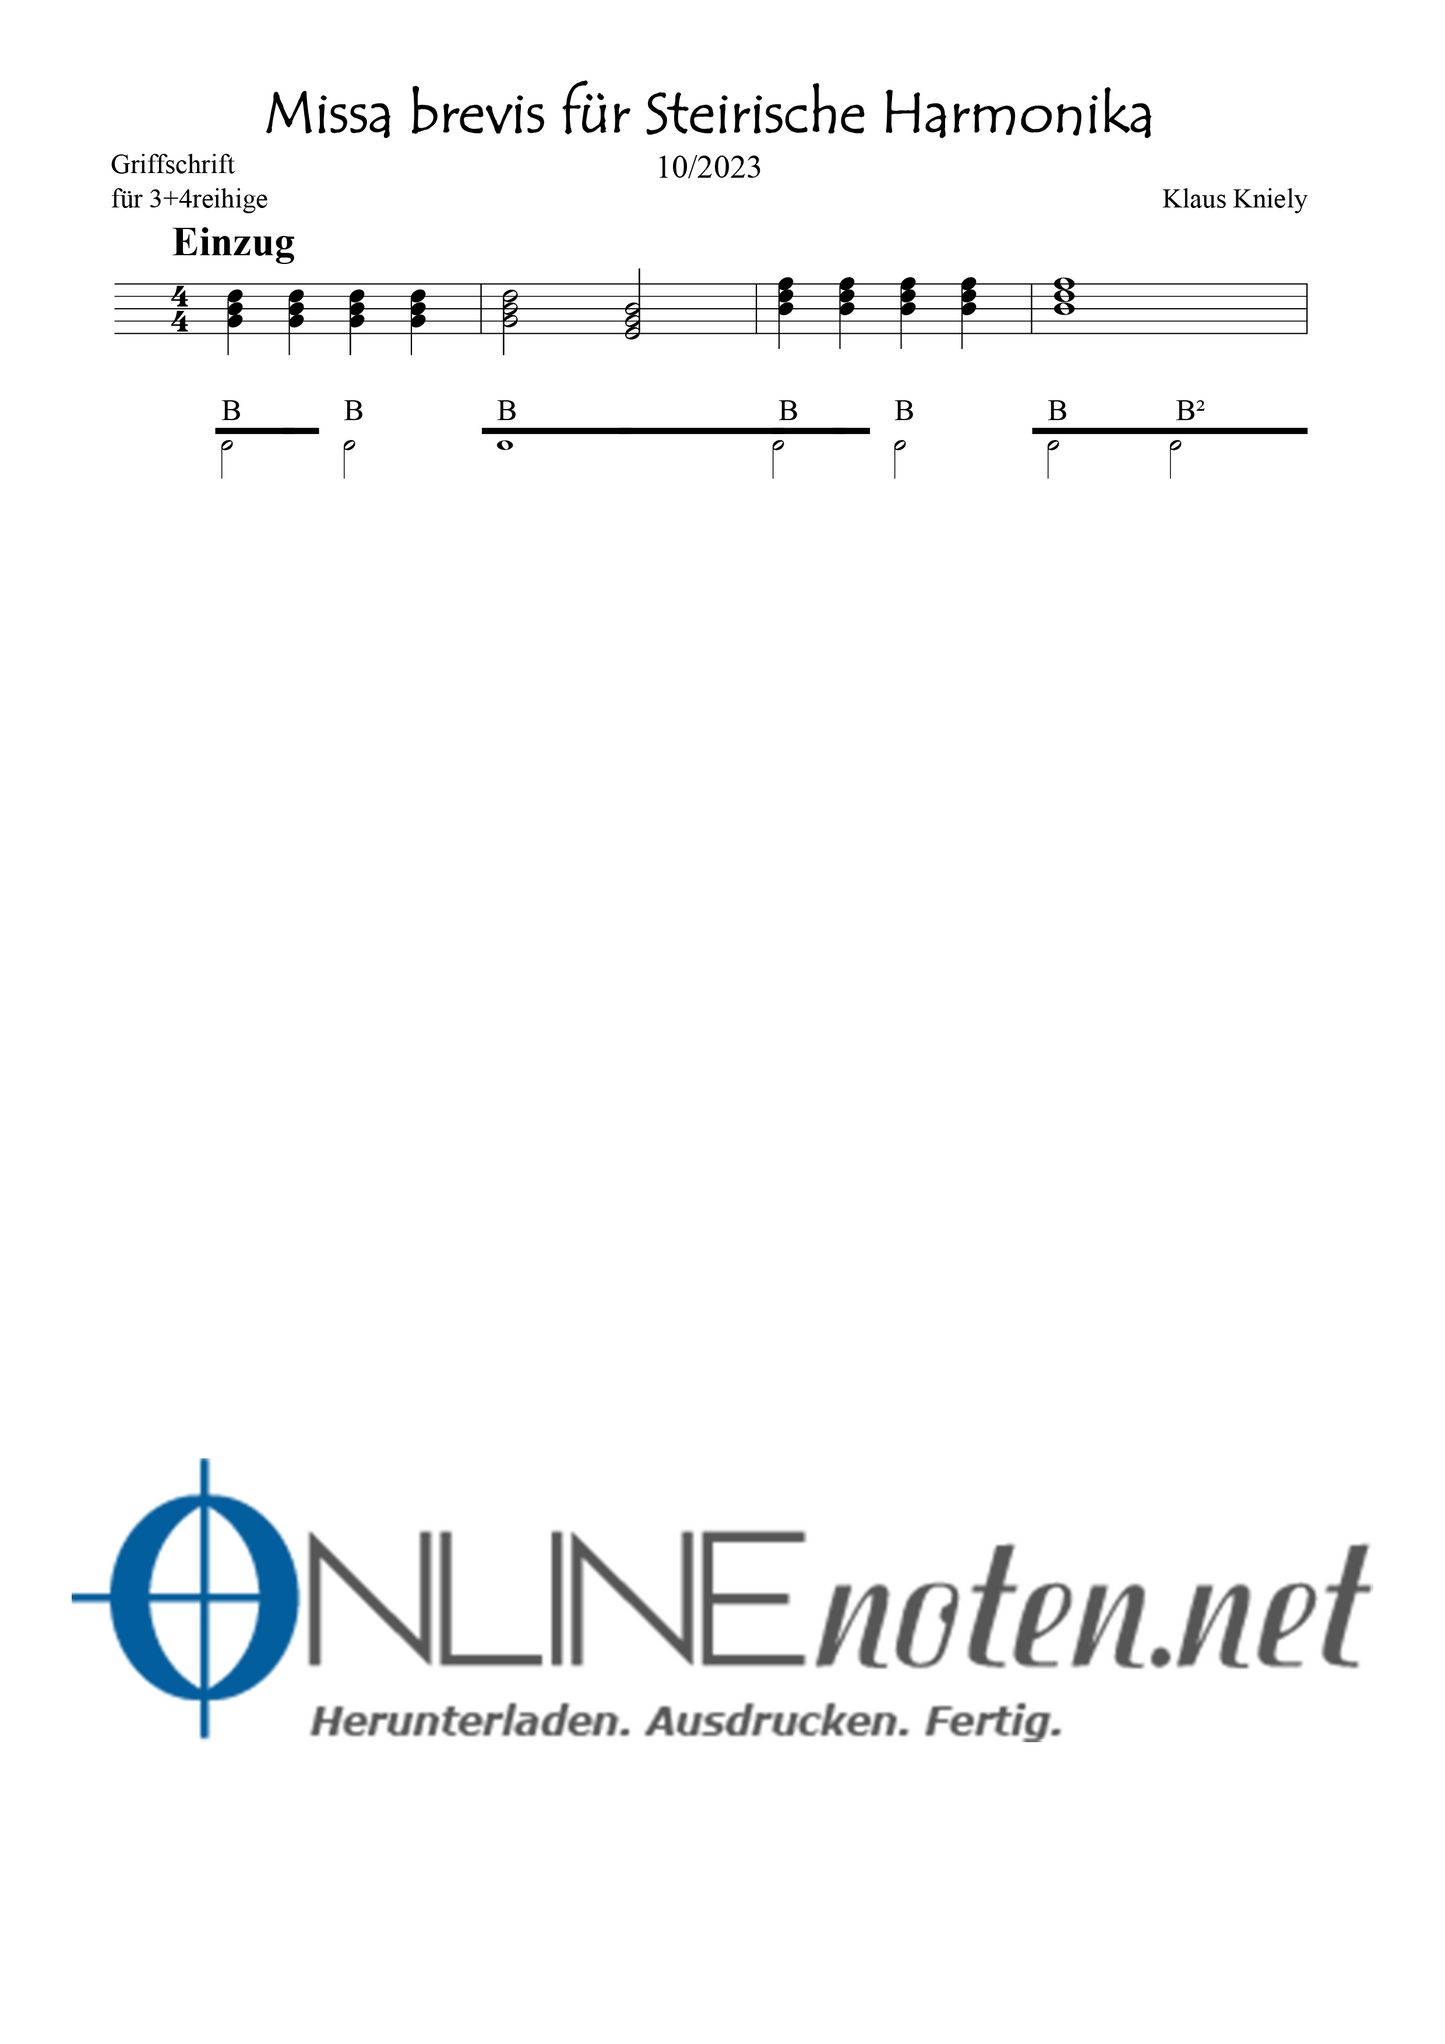 Missa brevis für Steirische Harmonika - Griffschrift 3+4reihige